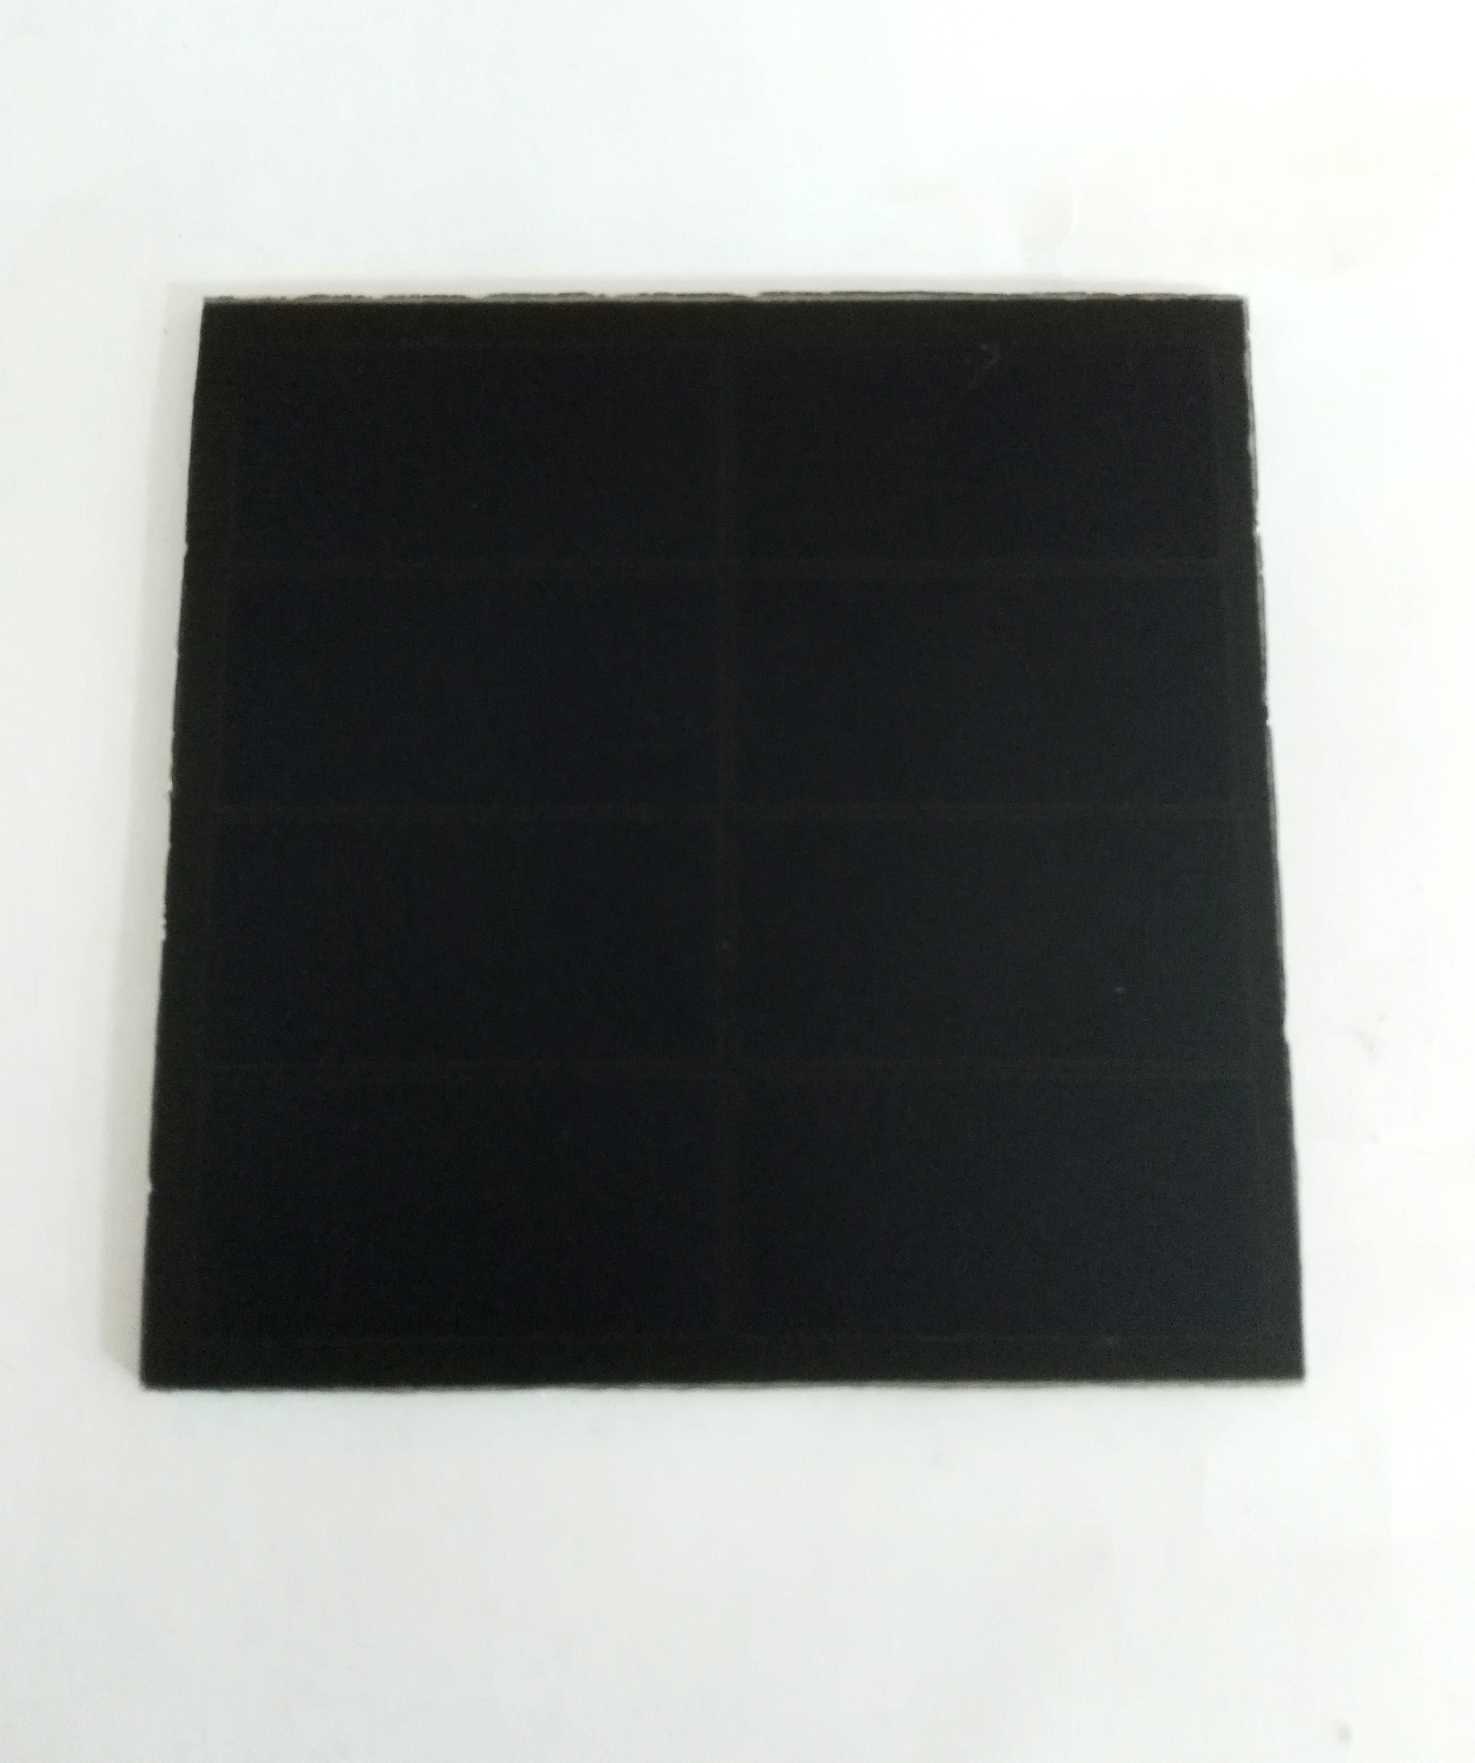 供应其他尺寸sunpower硅片高效太阳能电池板 迪晟DS6060图片